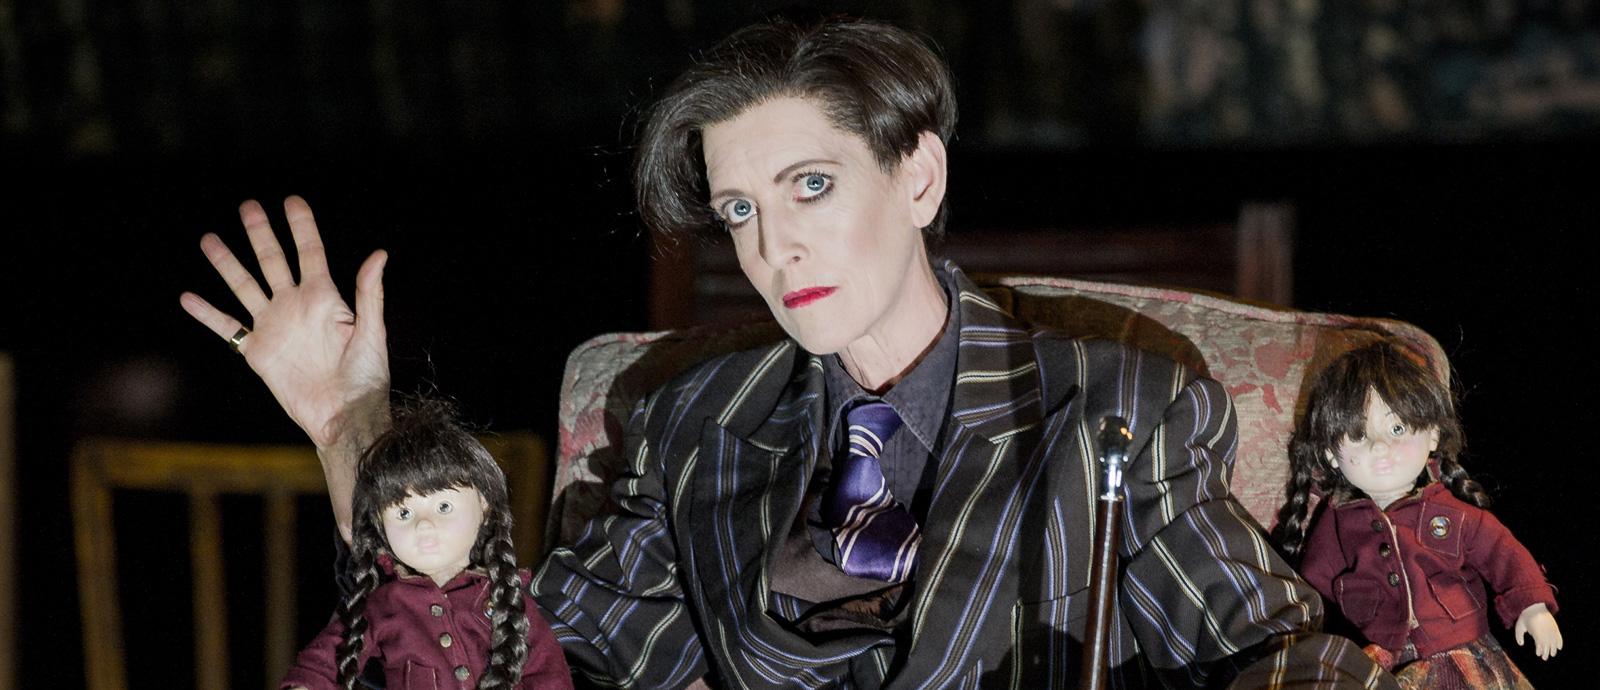 ENO Peter Grimes: Rebecca de Pont Davies as Auntie (c) Robert Workman